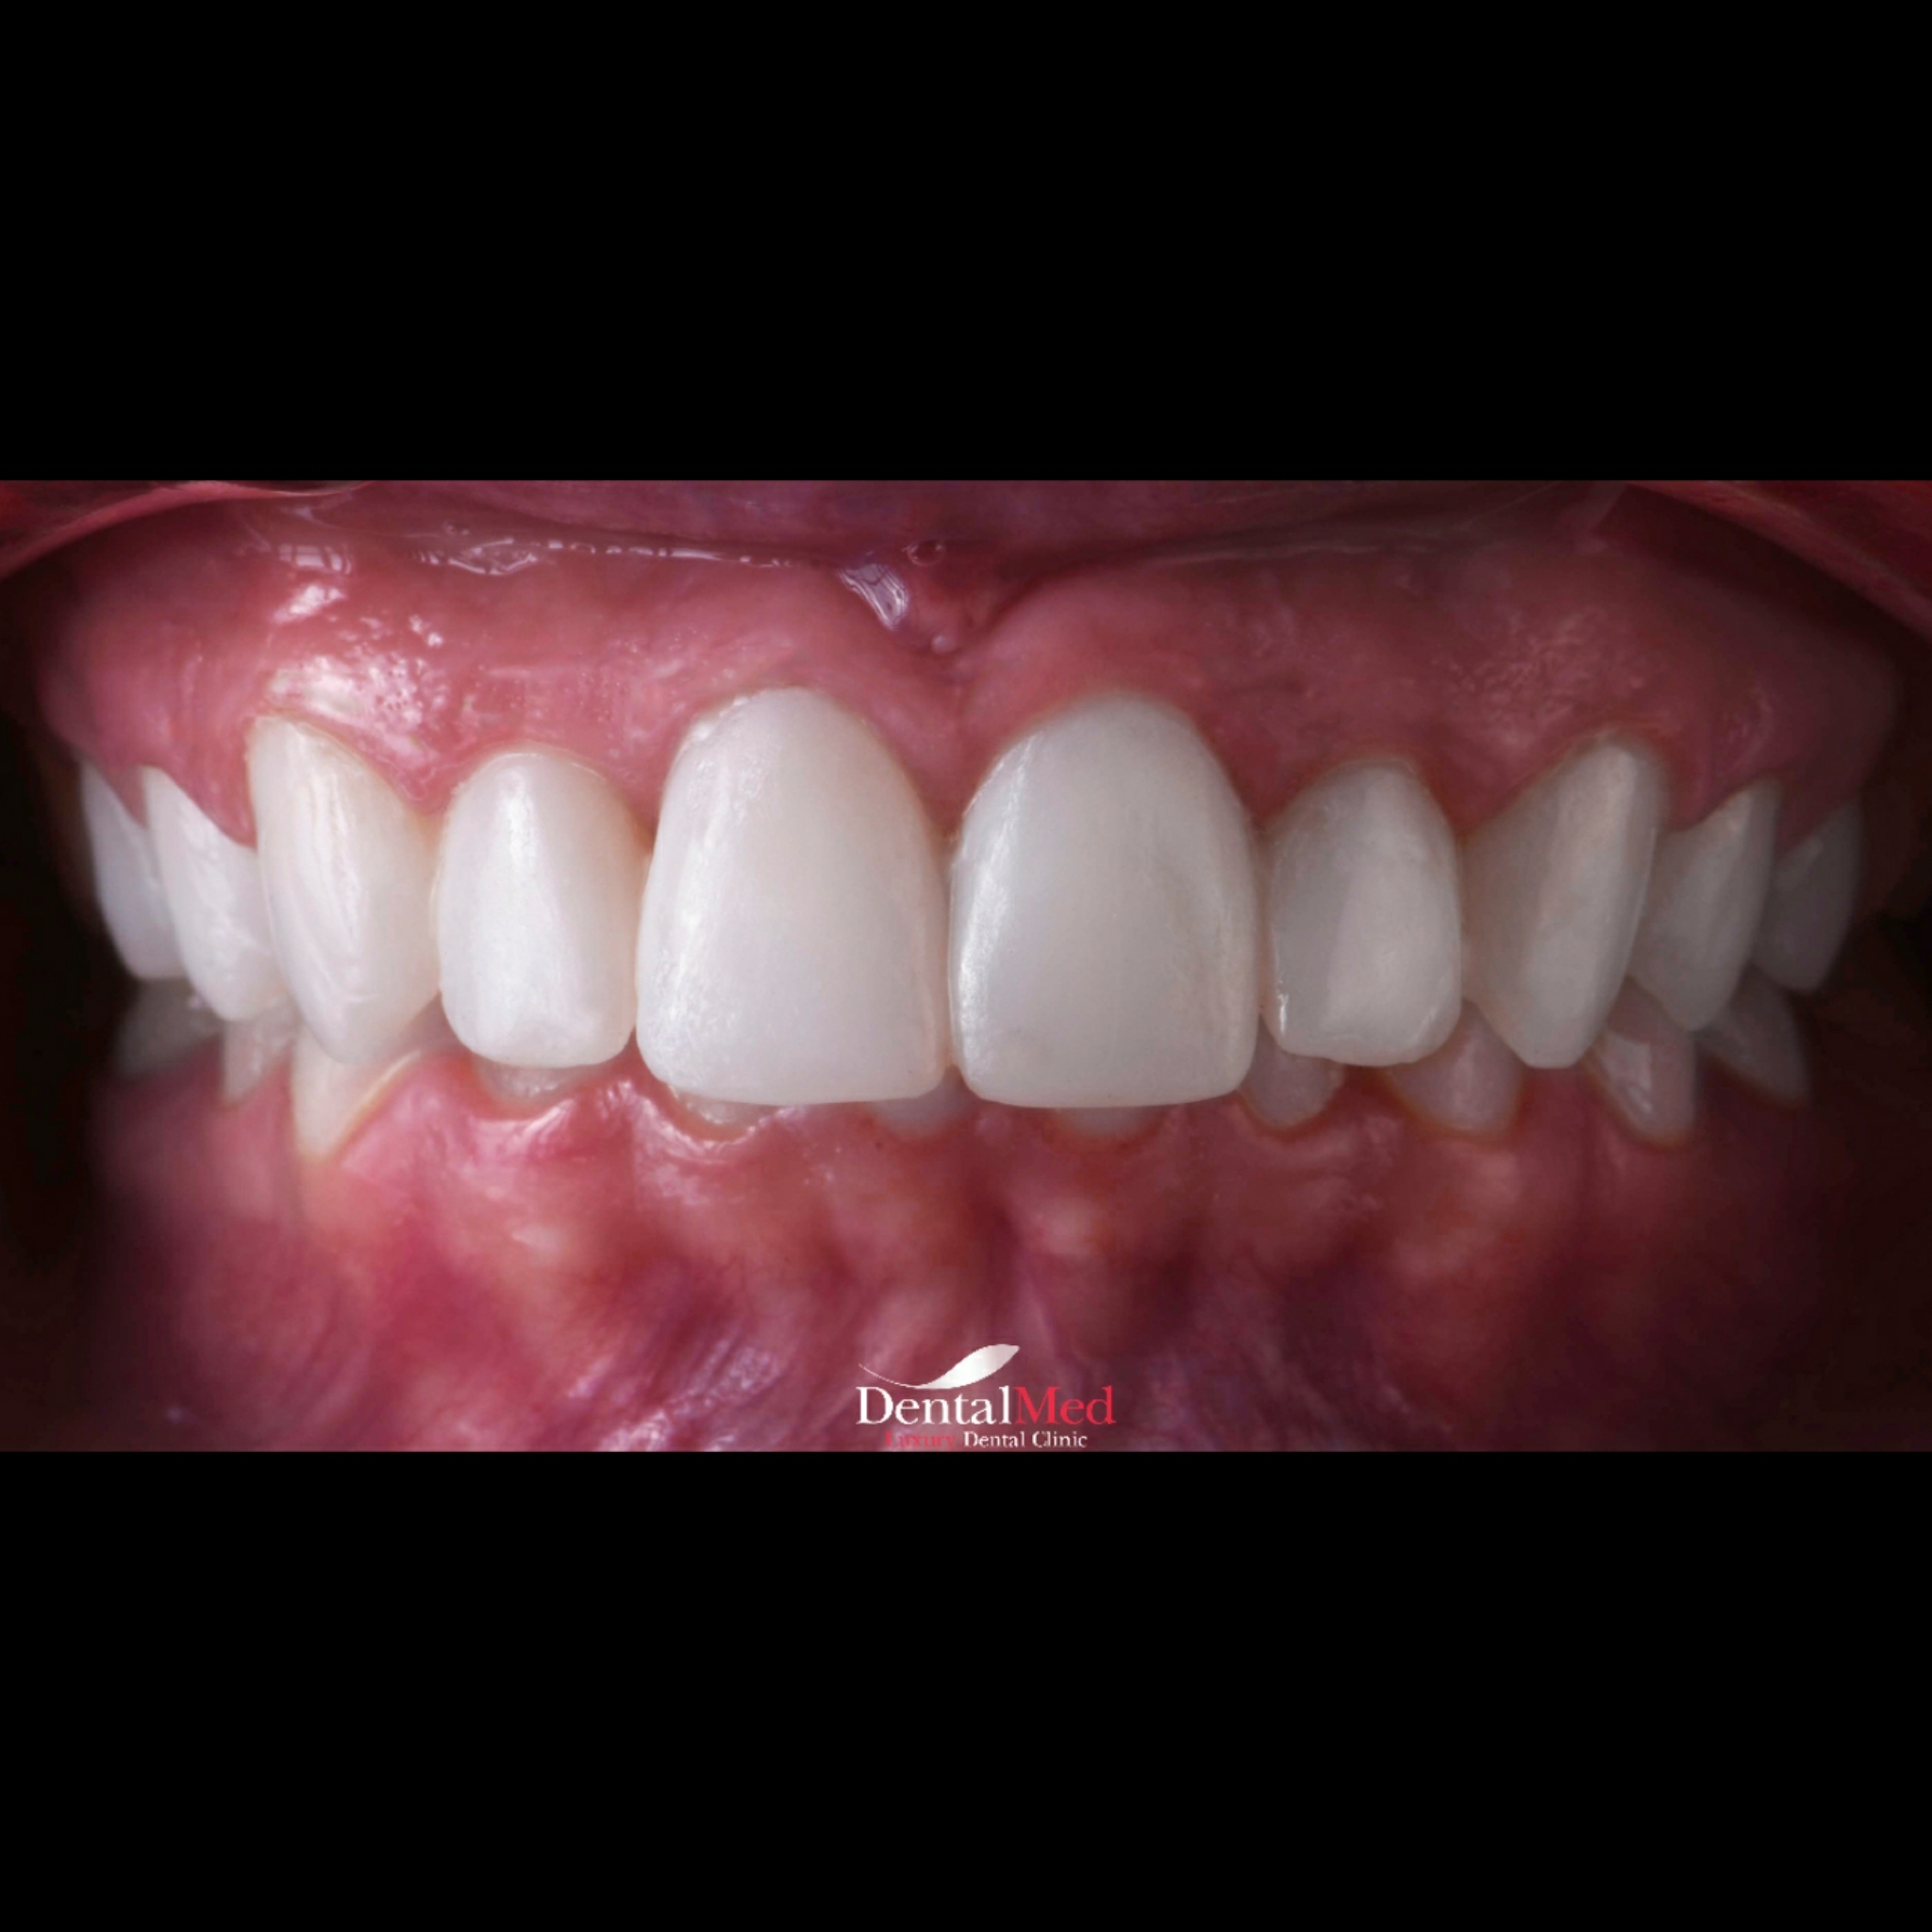 Fatete dentare Digital Smile Design (DSD)